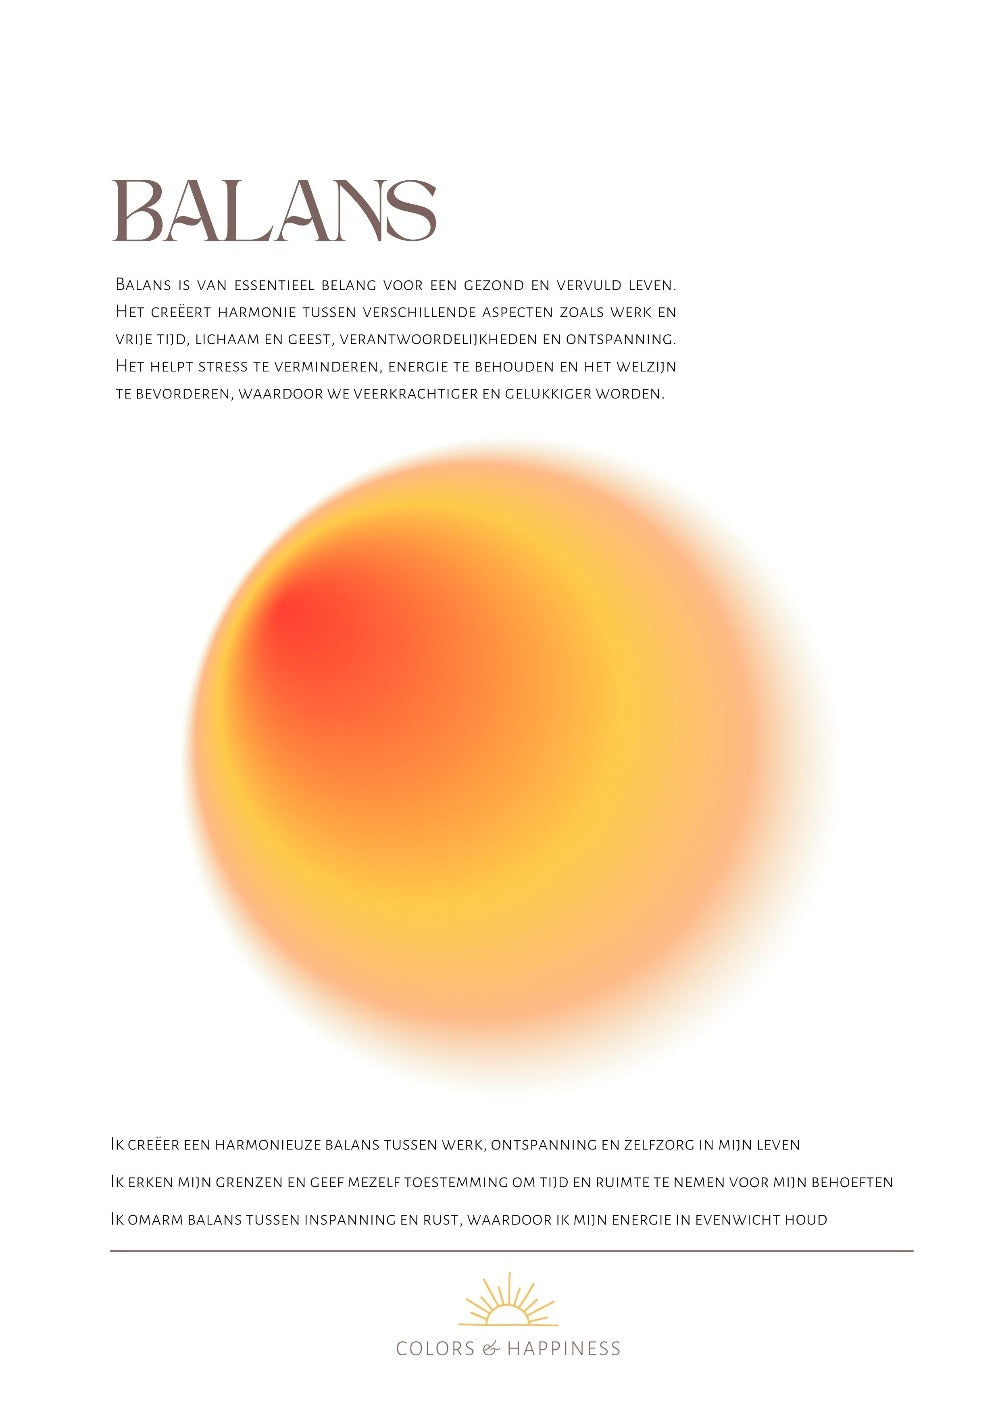 Stijlvolle poster met als thema balans, digitale download voor een bewuster leven